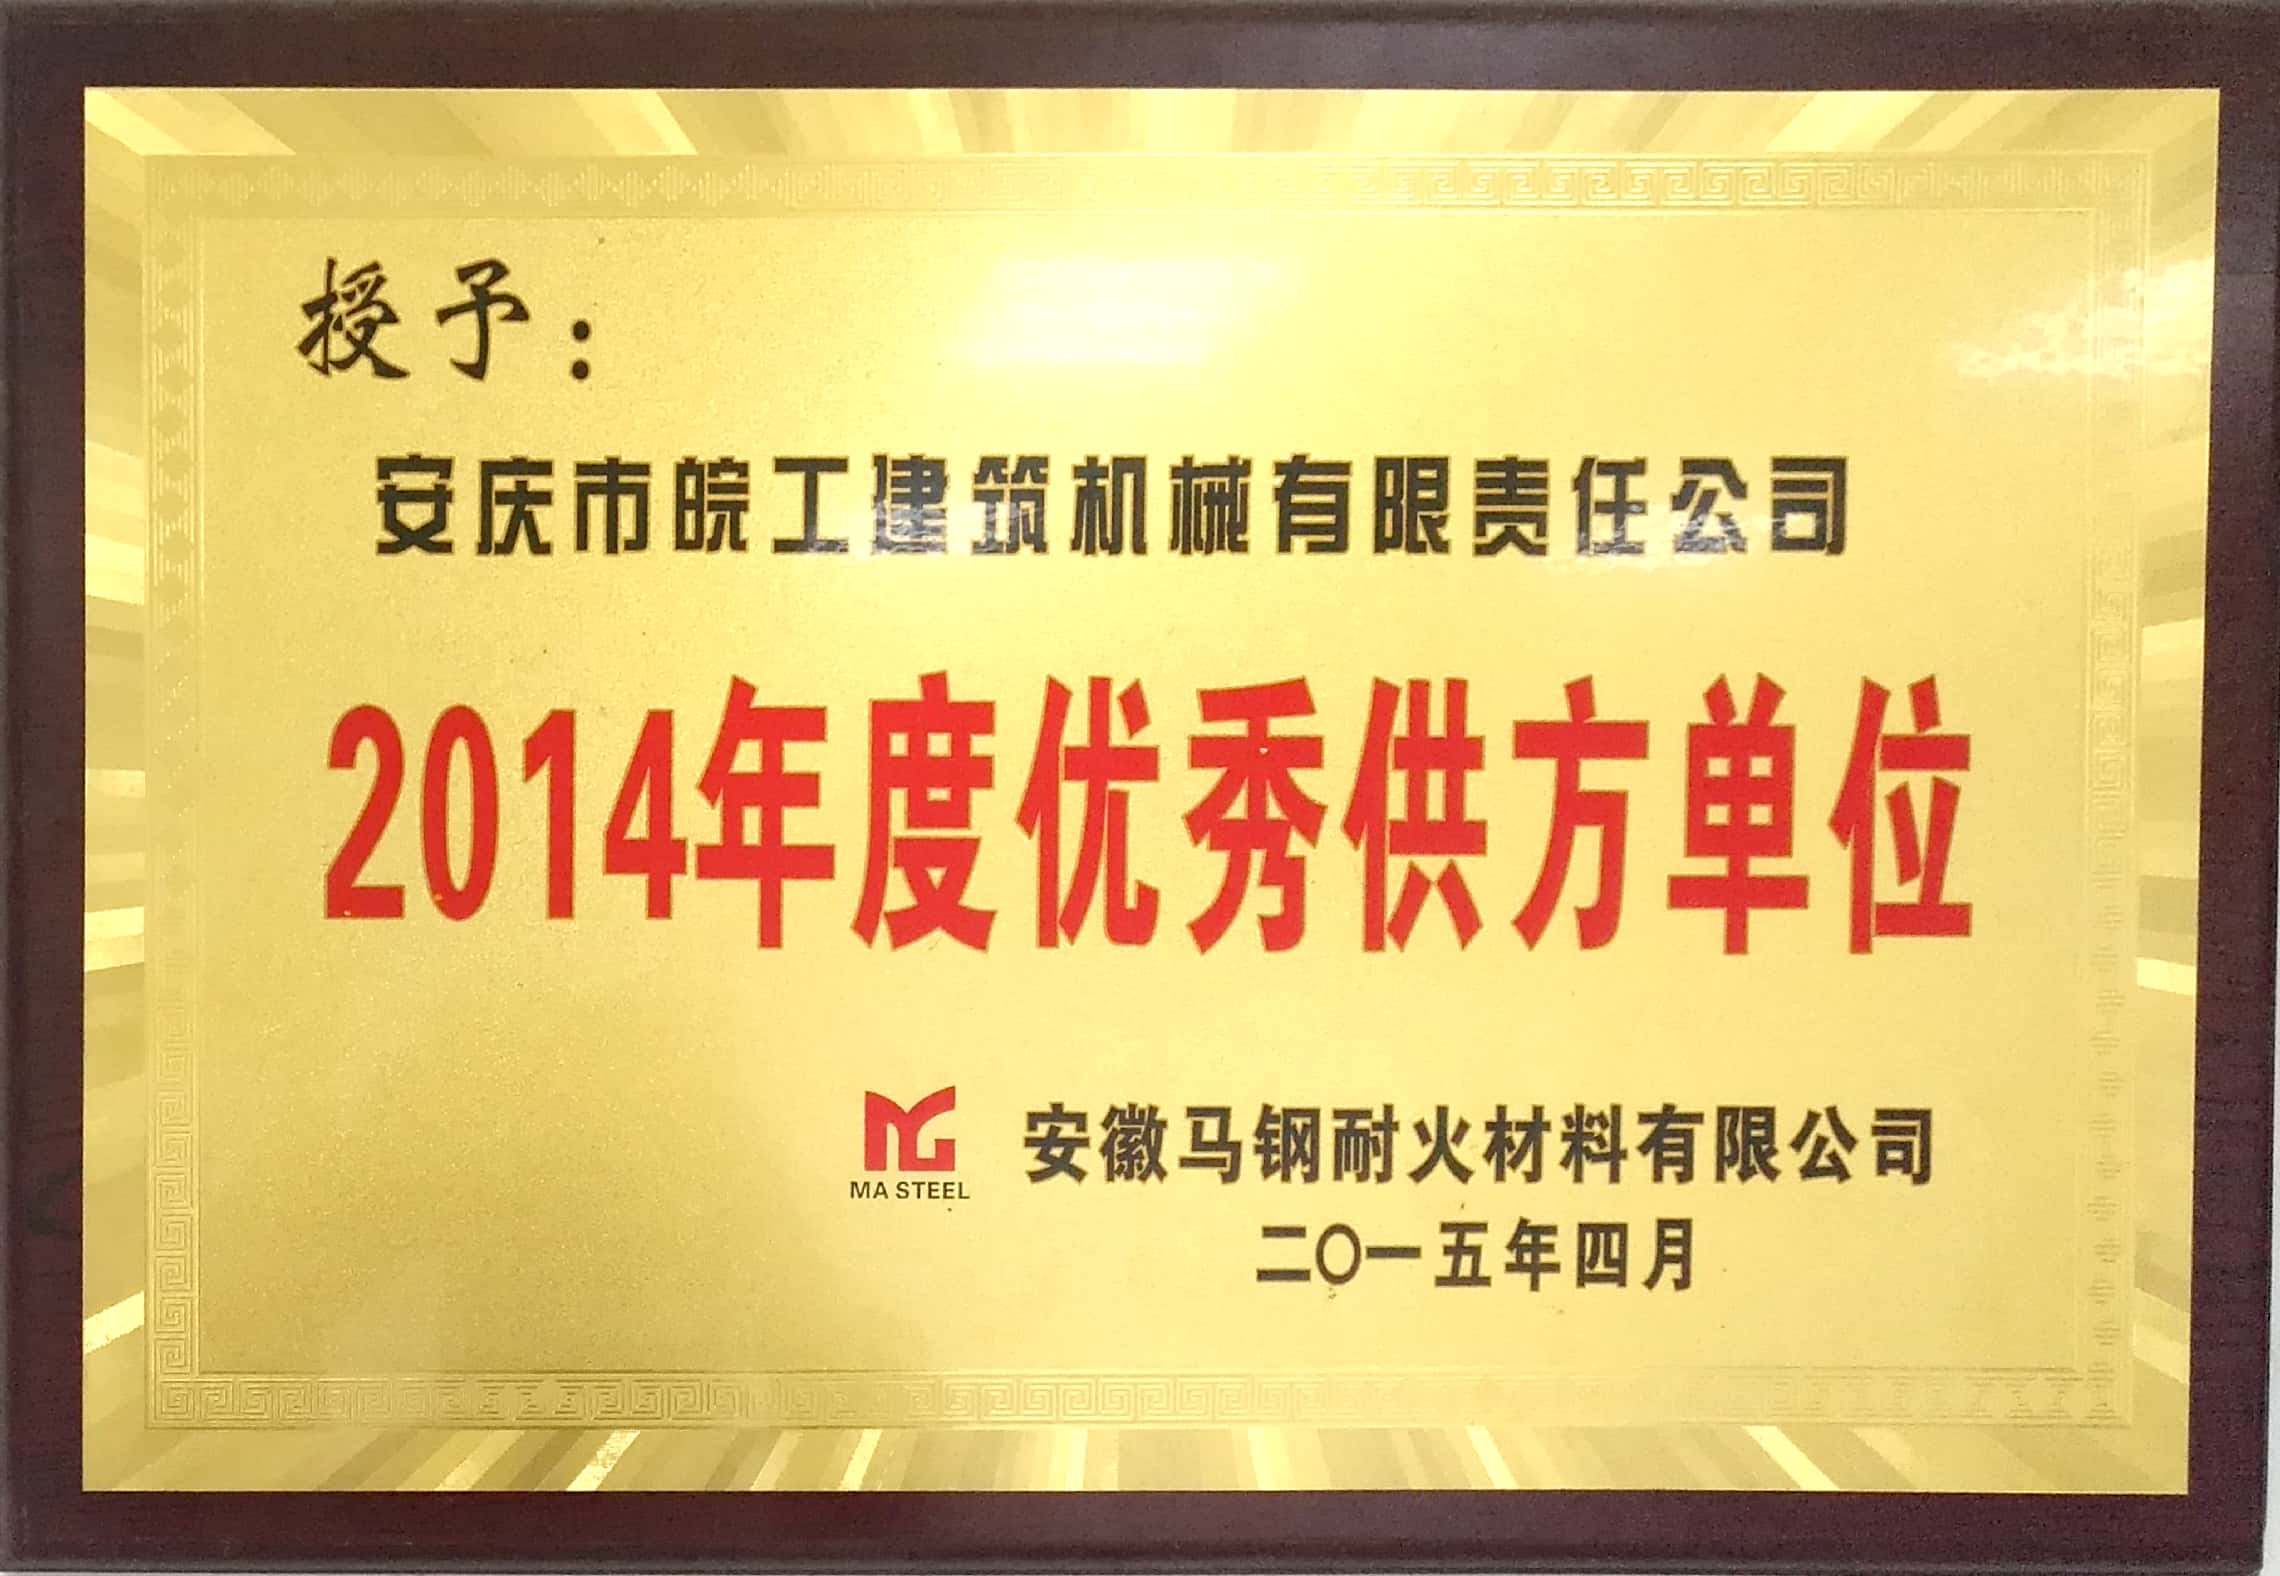 安徽馬鋼耐火材料授予2014年度優秀供方單位